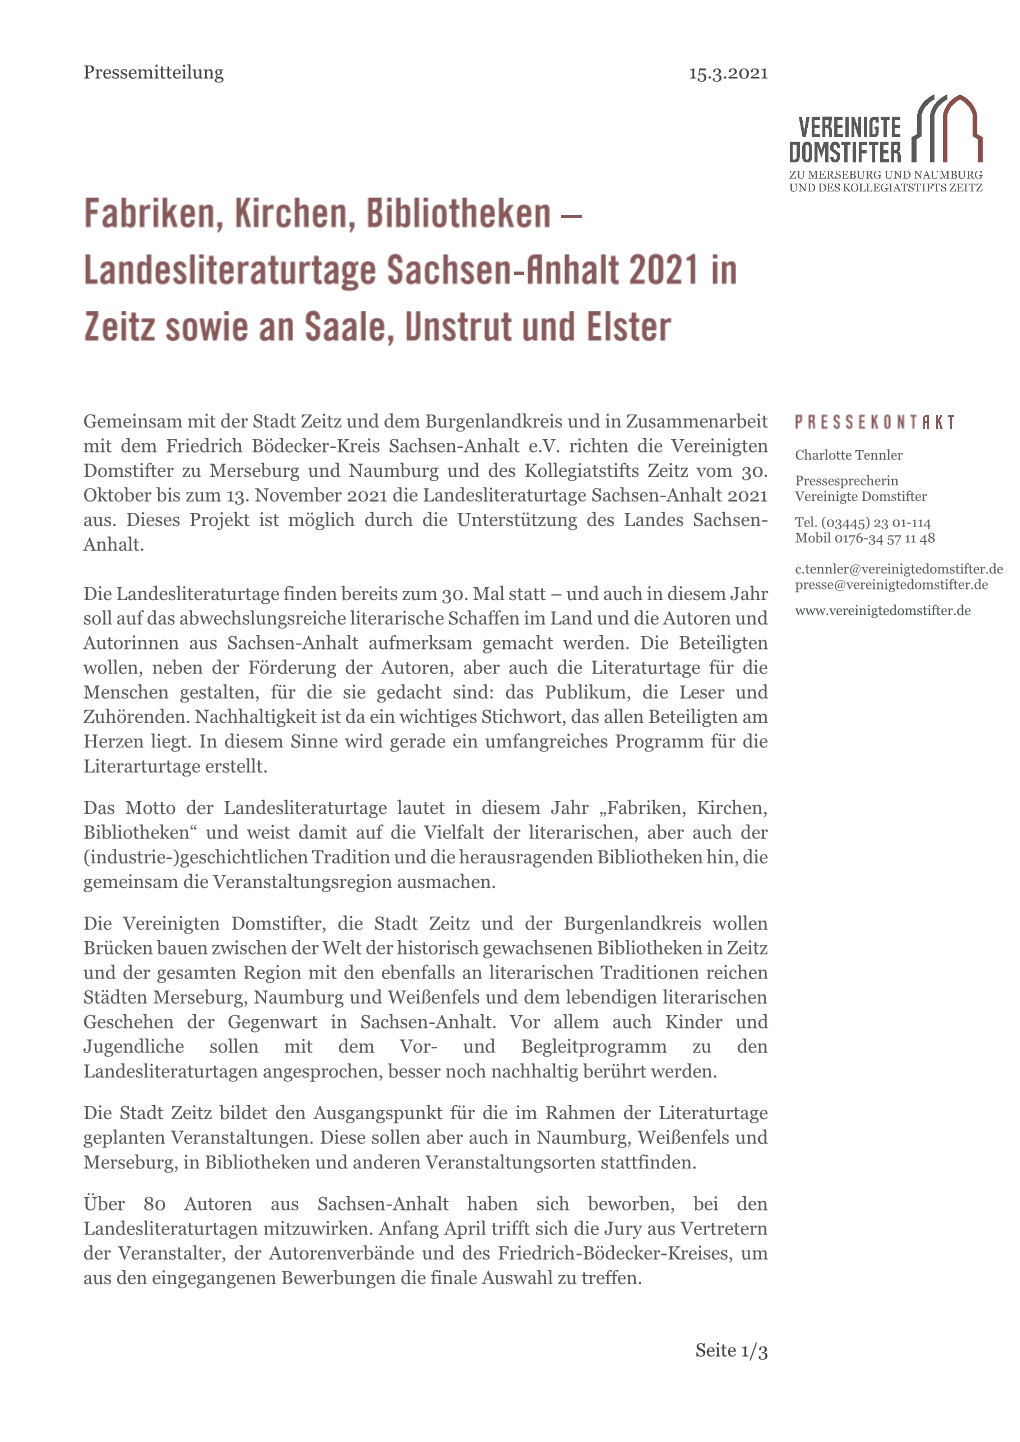 2021 03 15 Landesliteraturtage Sachsen-Anhalt 2021 in Zeitz